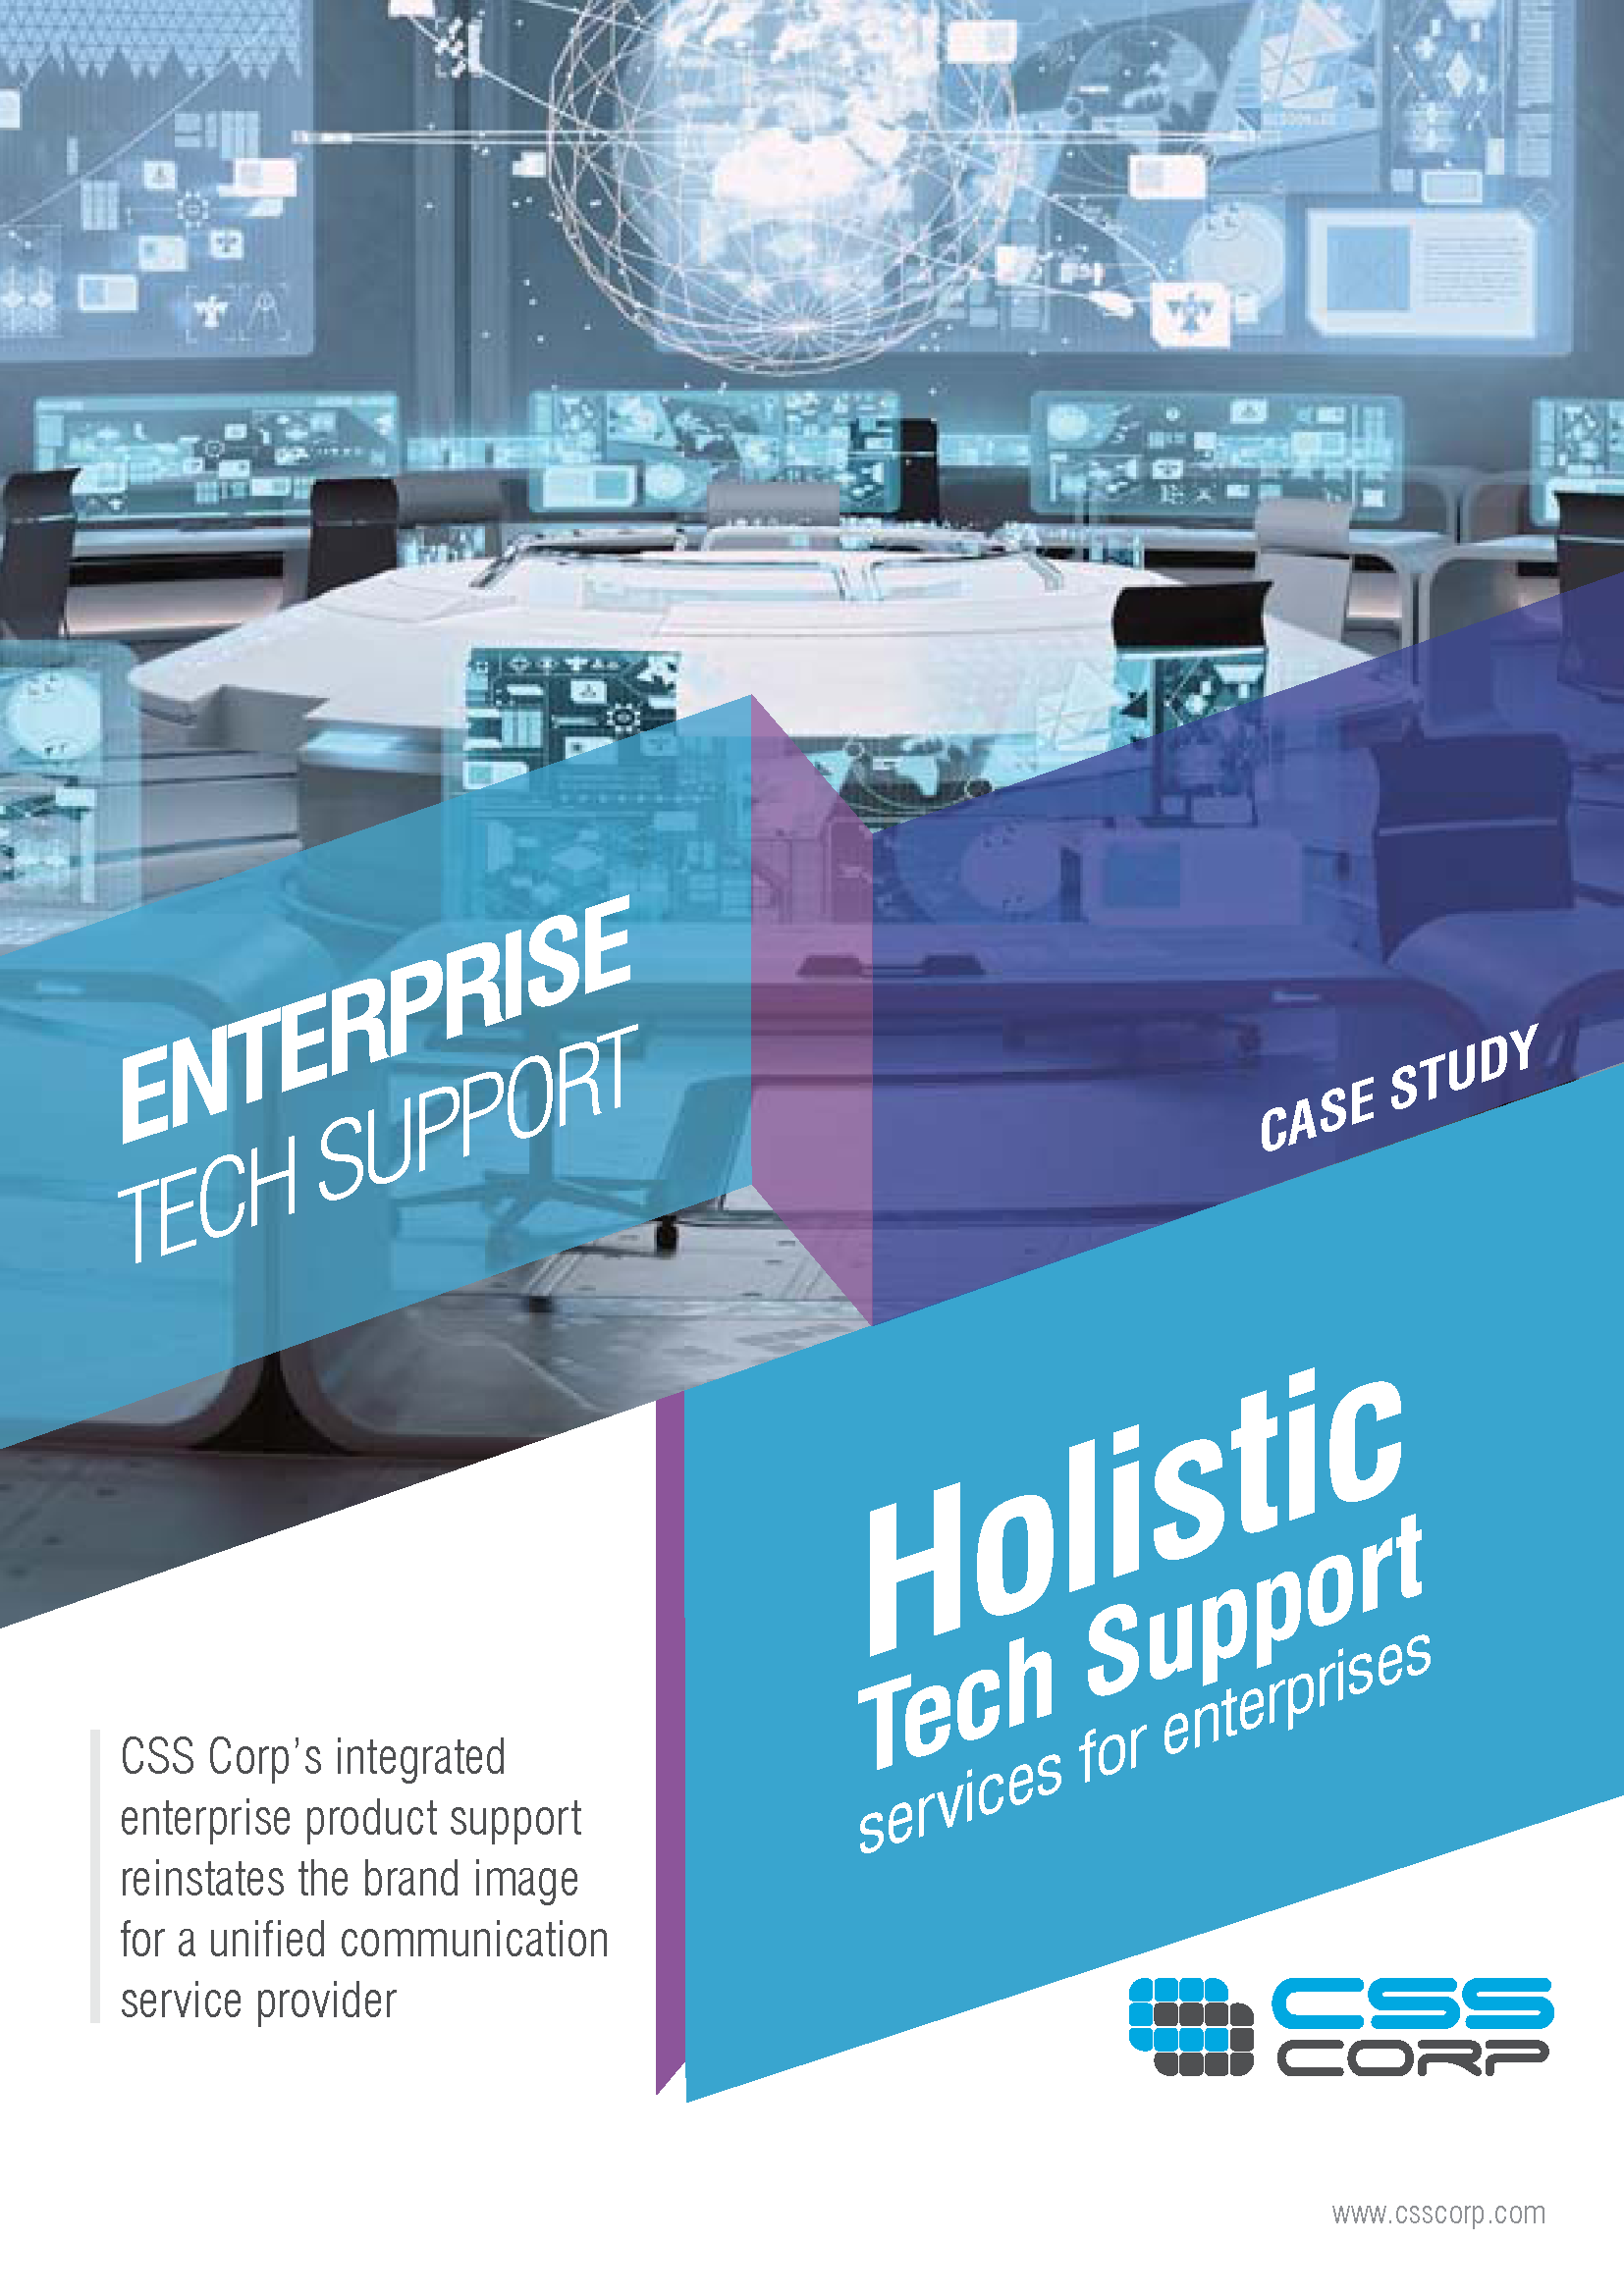 Holistic tech support services for enterprise